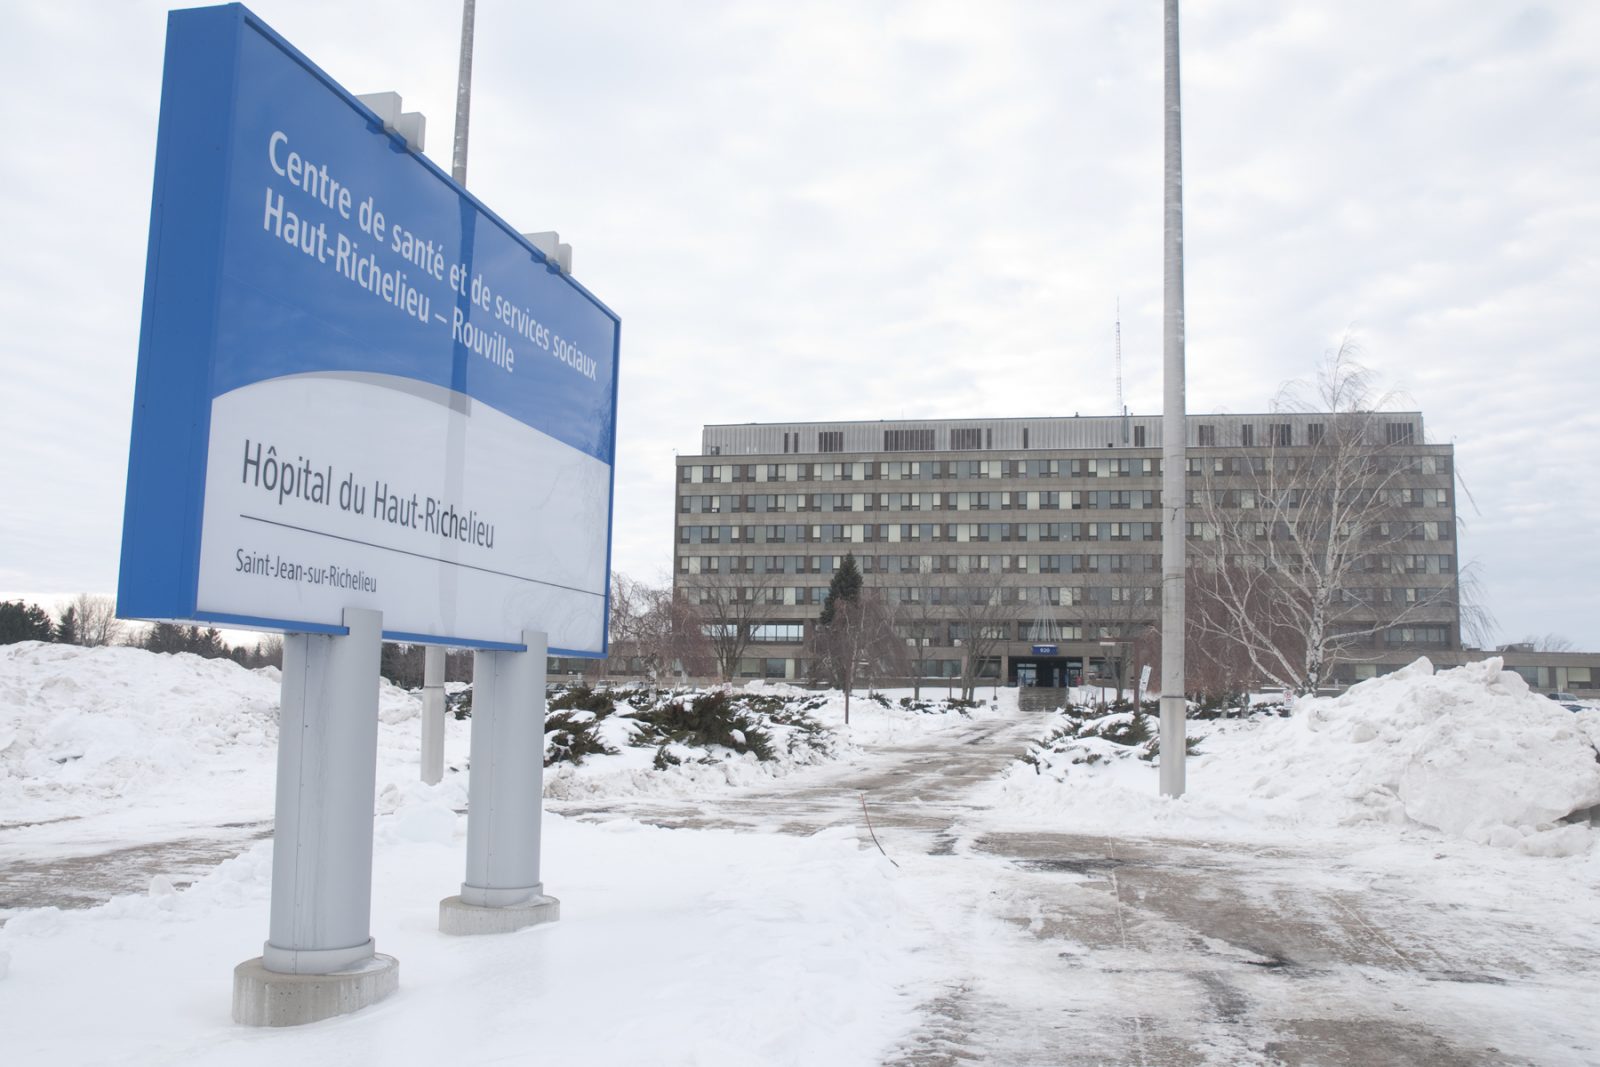 Les visites interrompues à l’Hôpital du Haut-Richelieu